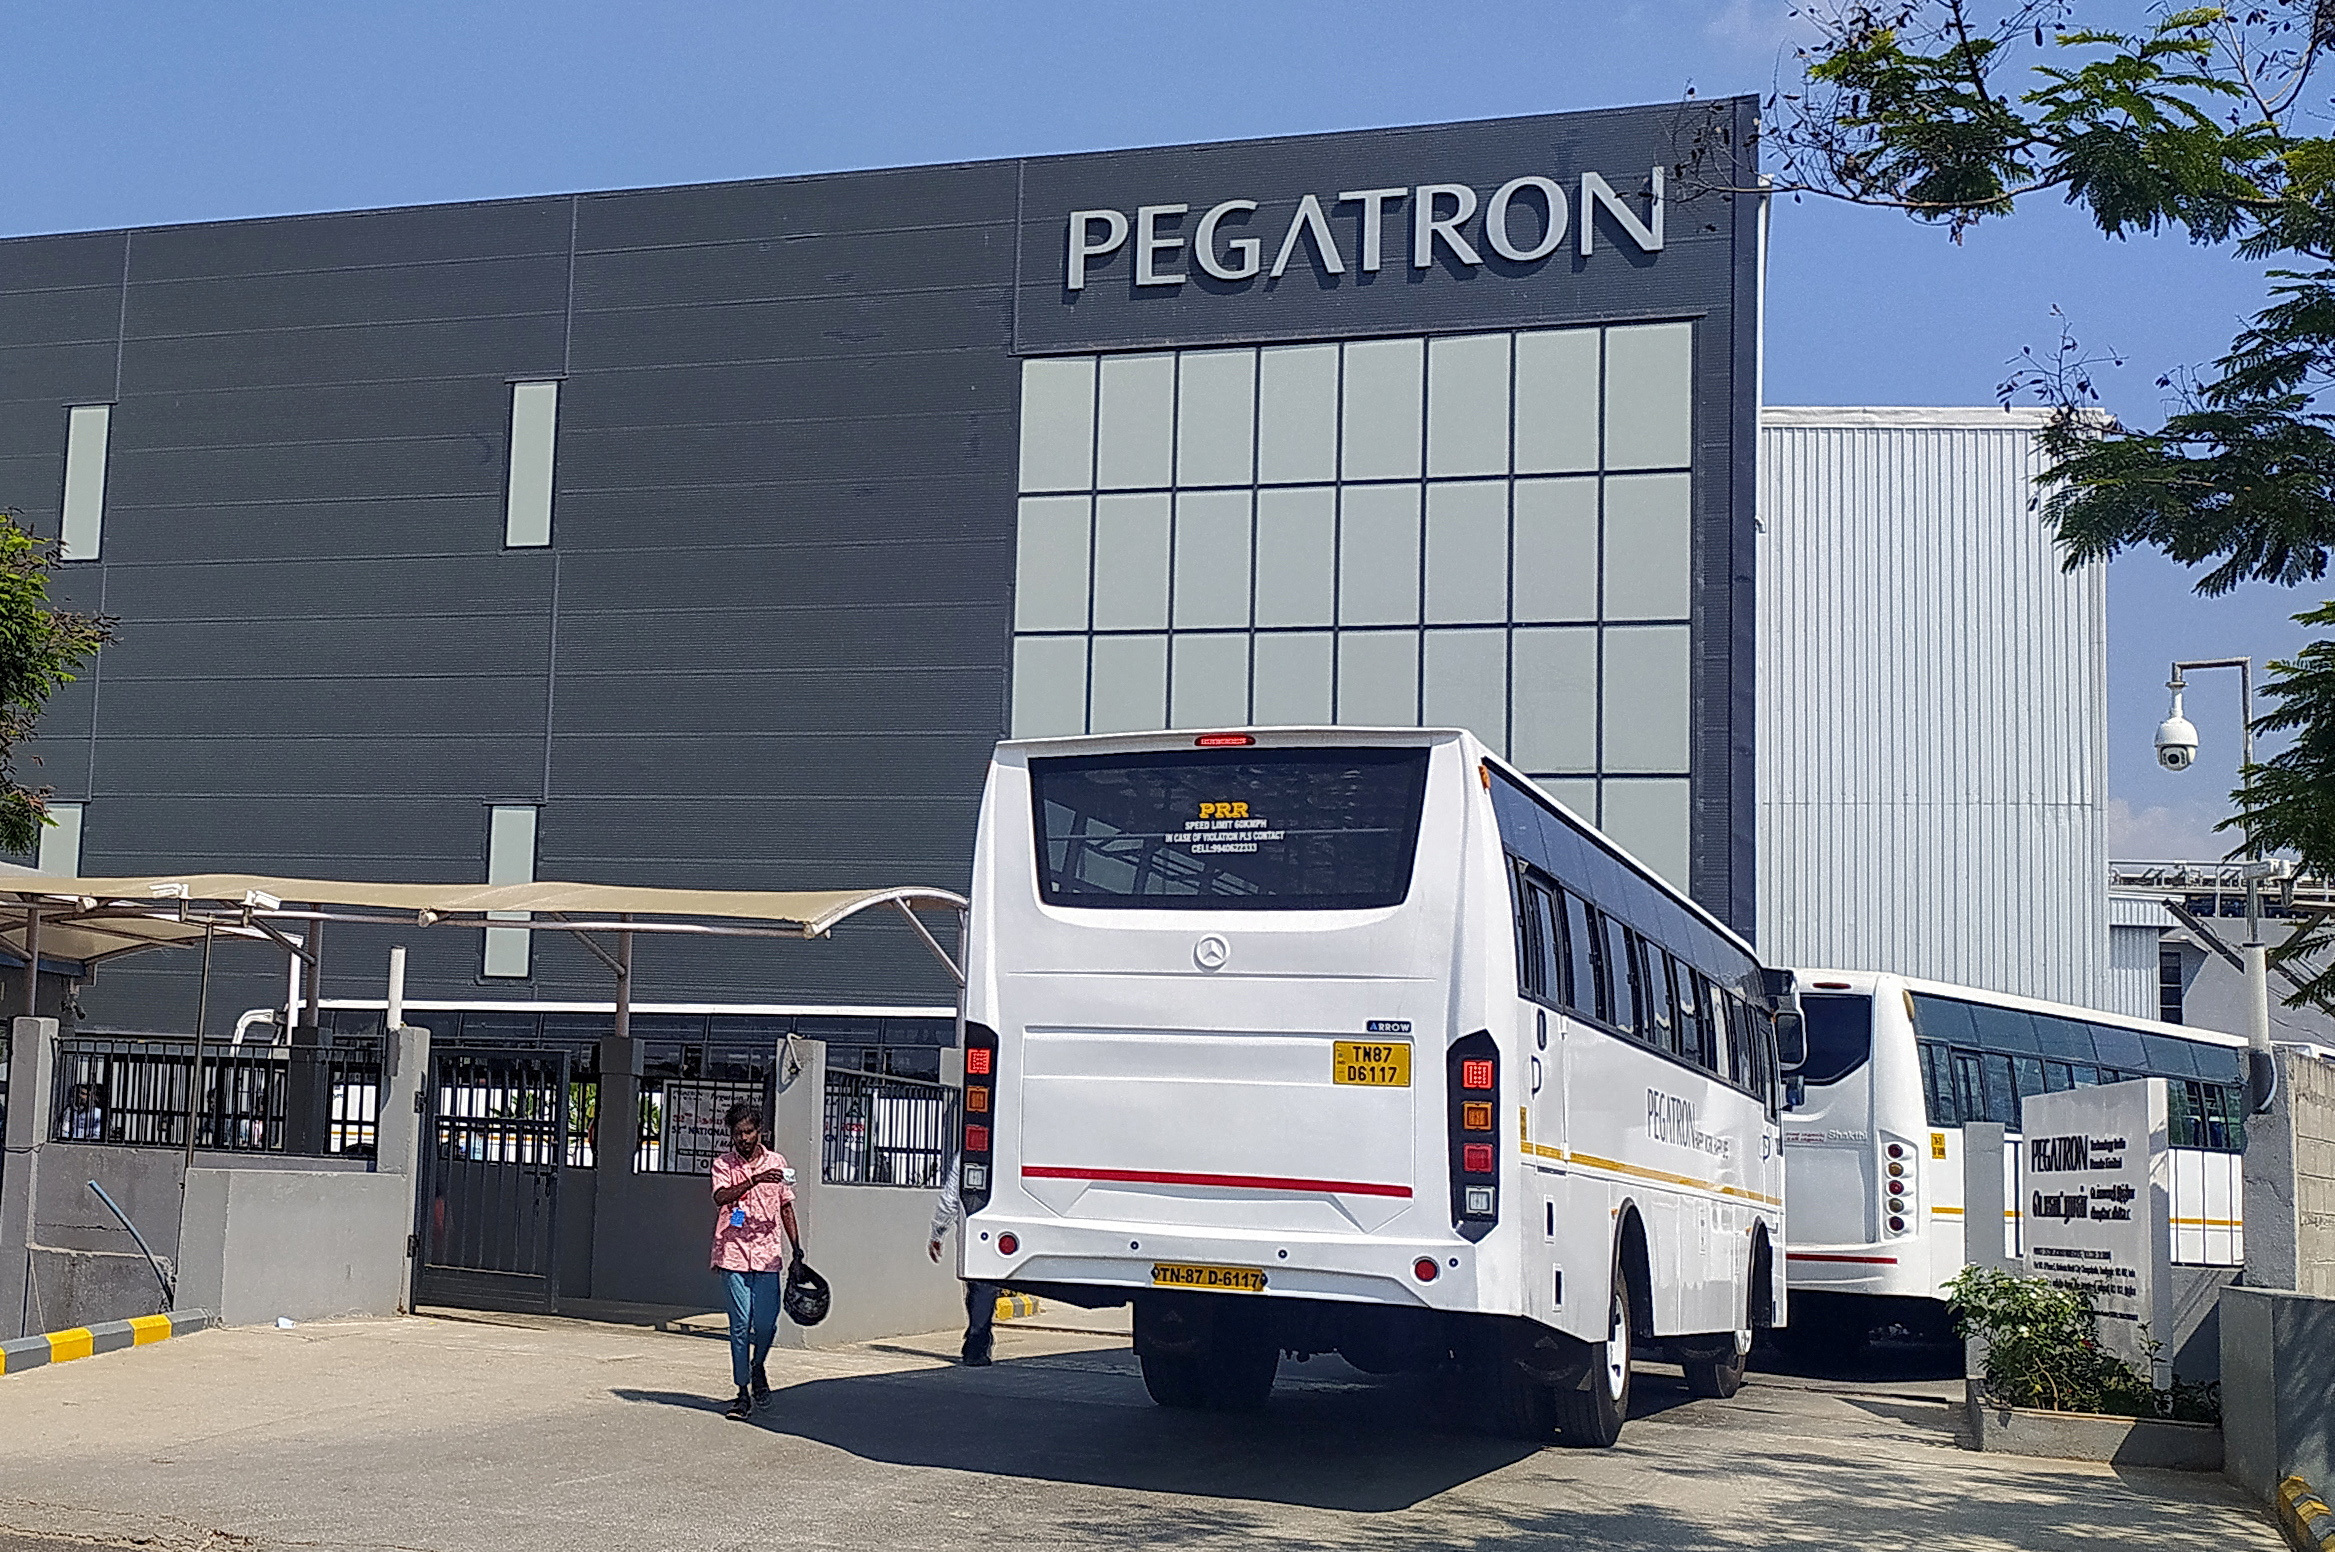 Mitarbeiterbusse fahren in das Pegatron-Werk in der Nähe von Chennai ein